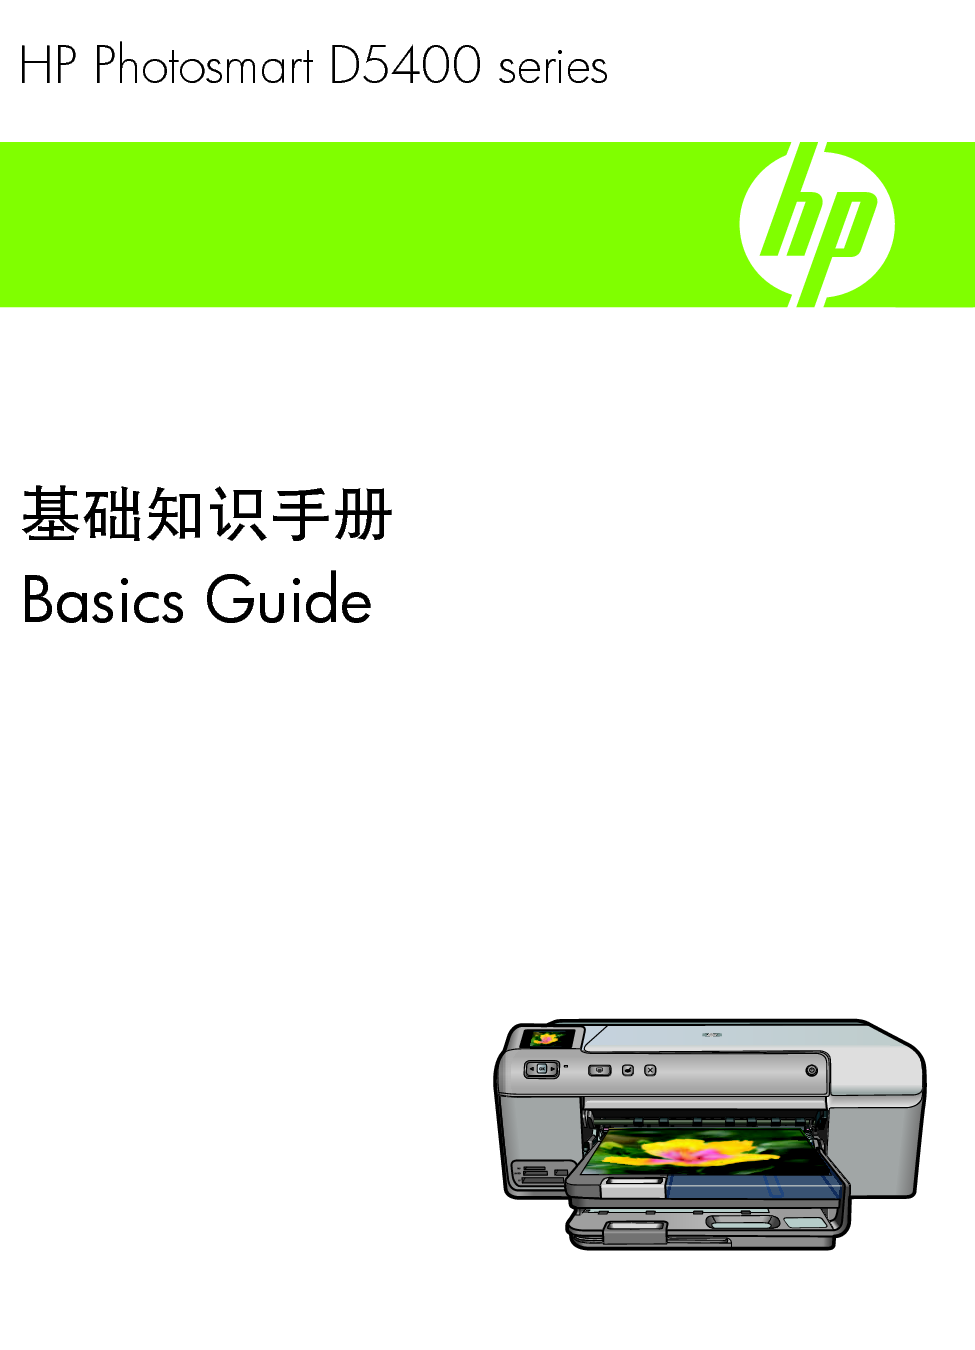 惠普 HP Photosmart D5400 基础使用手册 封面